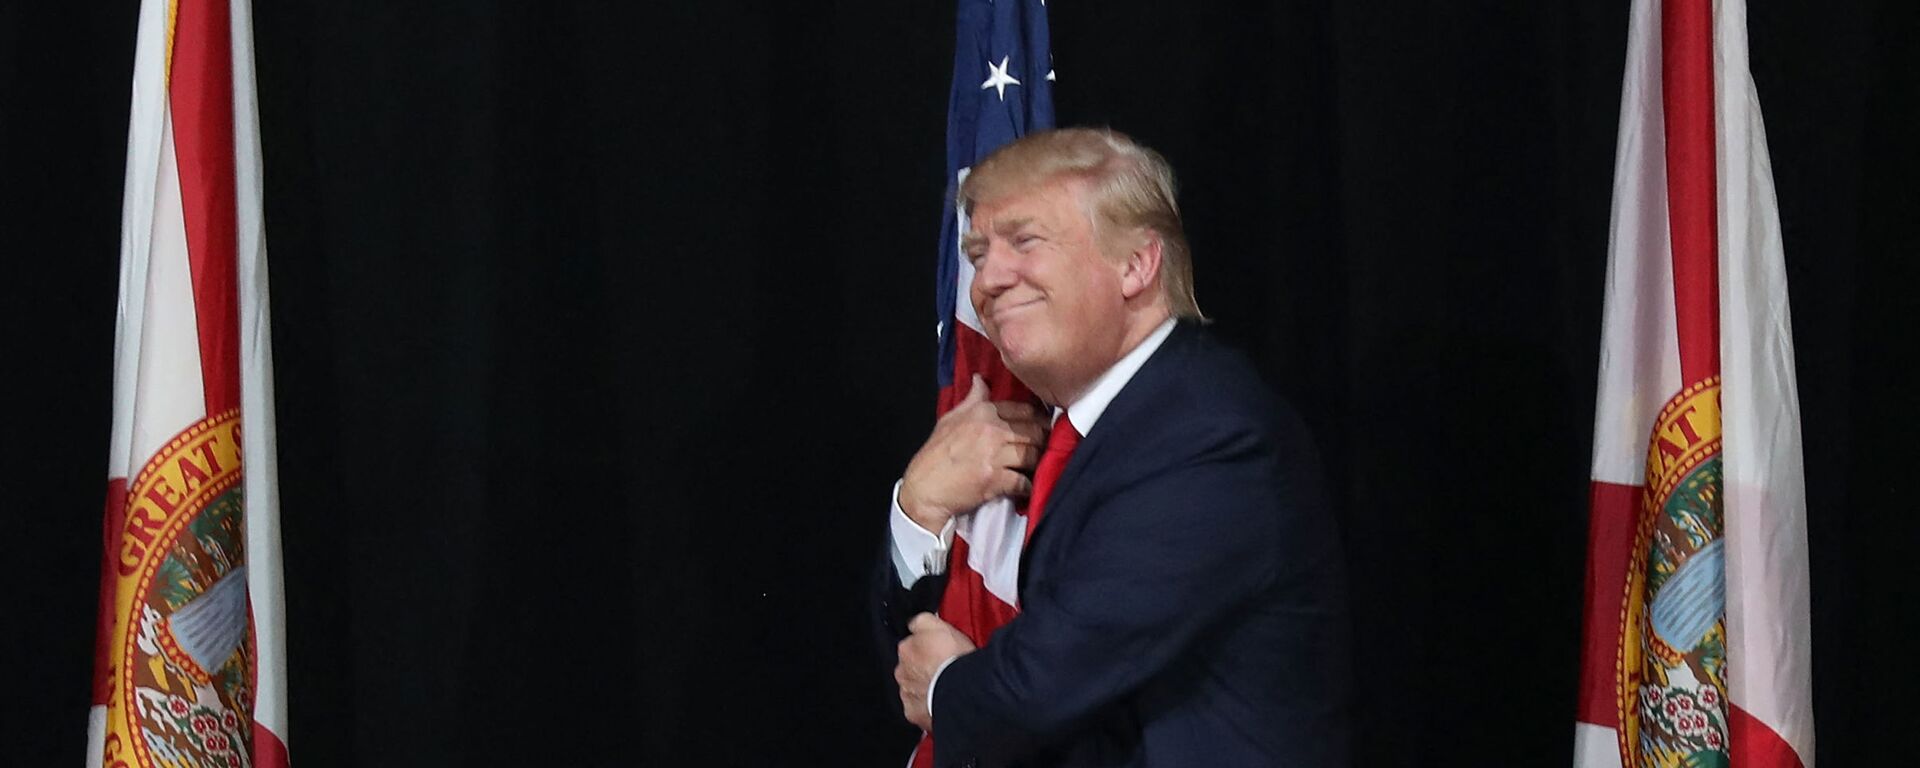 Тампа, Флорида - 24 октября: Кандидат в президенты от республиканцев Дональд Трамп обнимает американский флаг, когда он прибывает на митинг кампании в амфитеатре кредитного союза MidFlorida 24 октября 2016 года в Тампе, Флорида. До президентских выборов осталось 14 дней. Джо Рэдл / Getty Images / AFP (Фото Джо Рэдла - Sputnik Абхазия, 1920, 12.11.2022